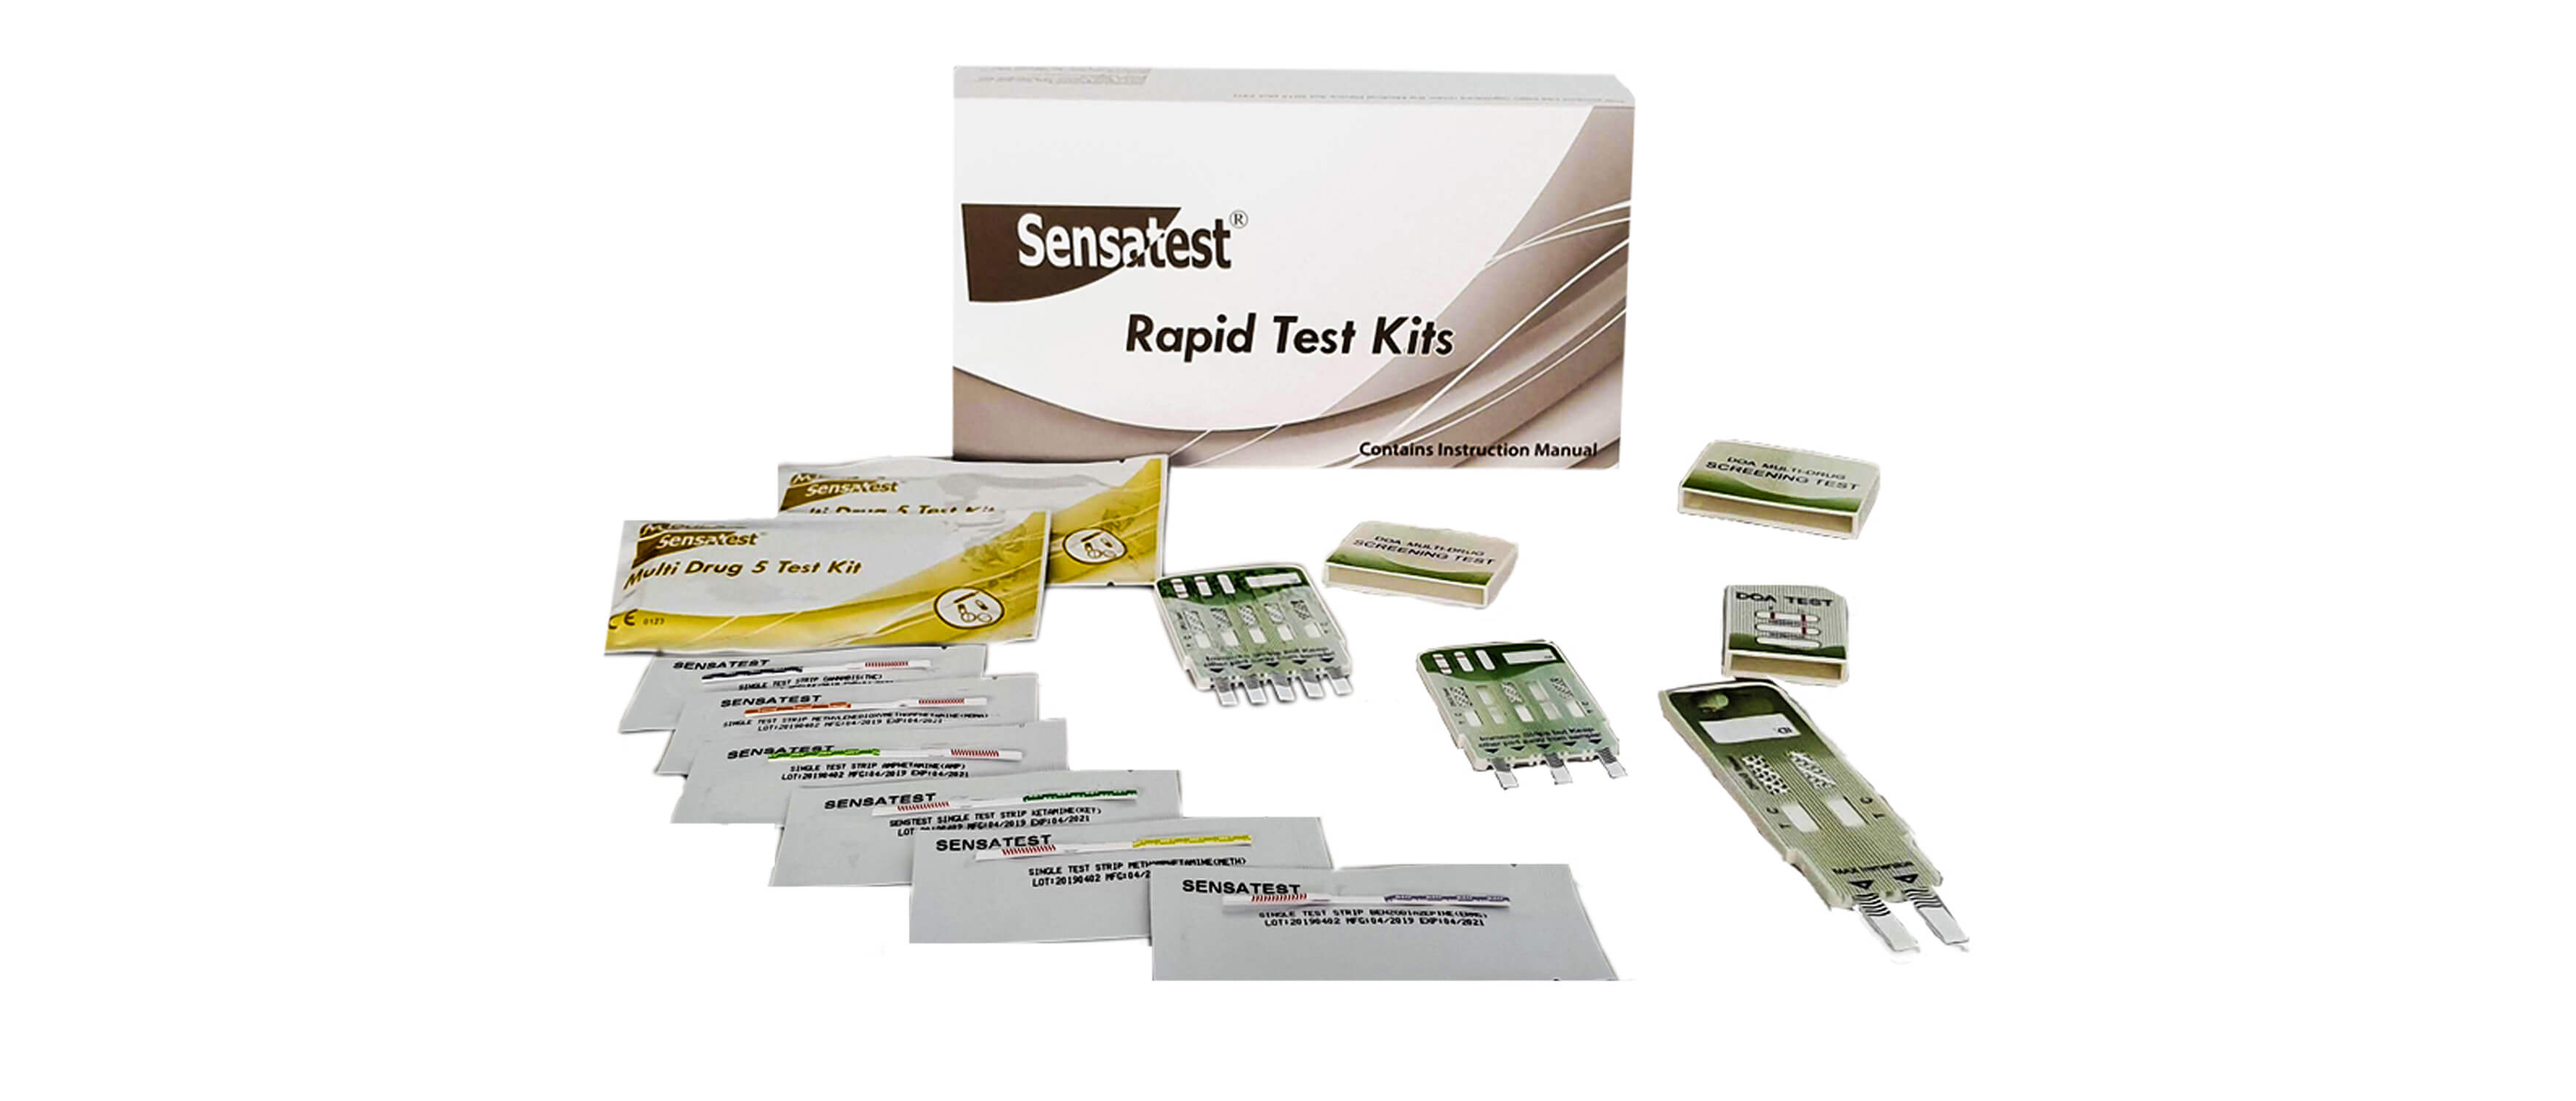 Drug of Abuse kits-Sensatest